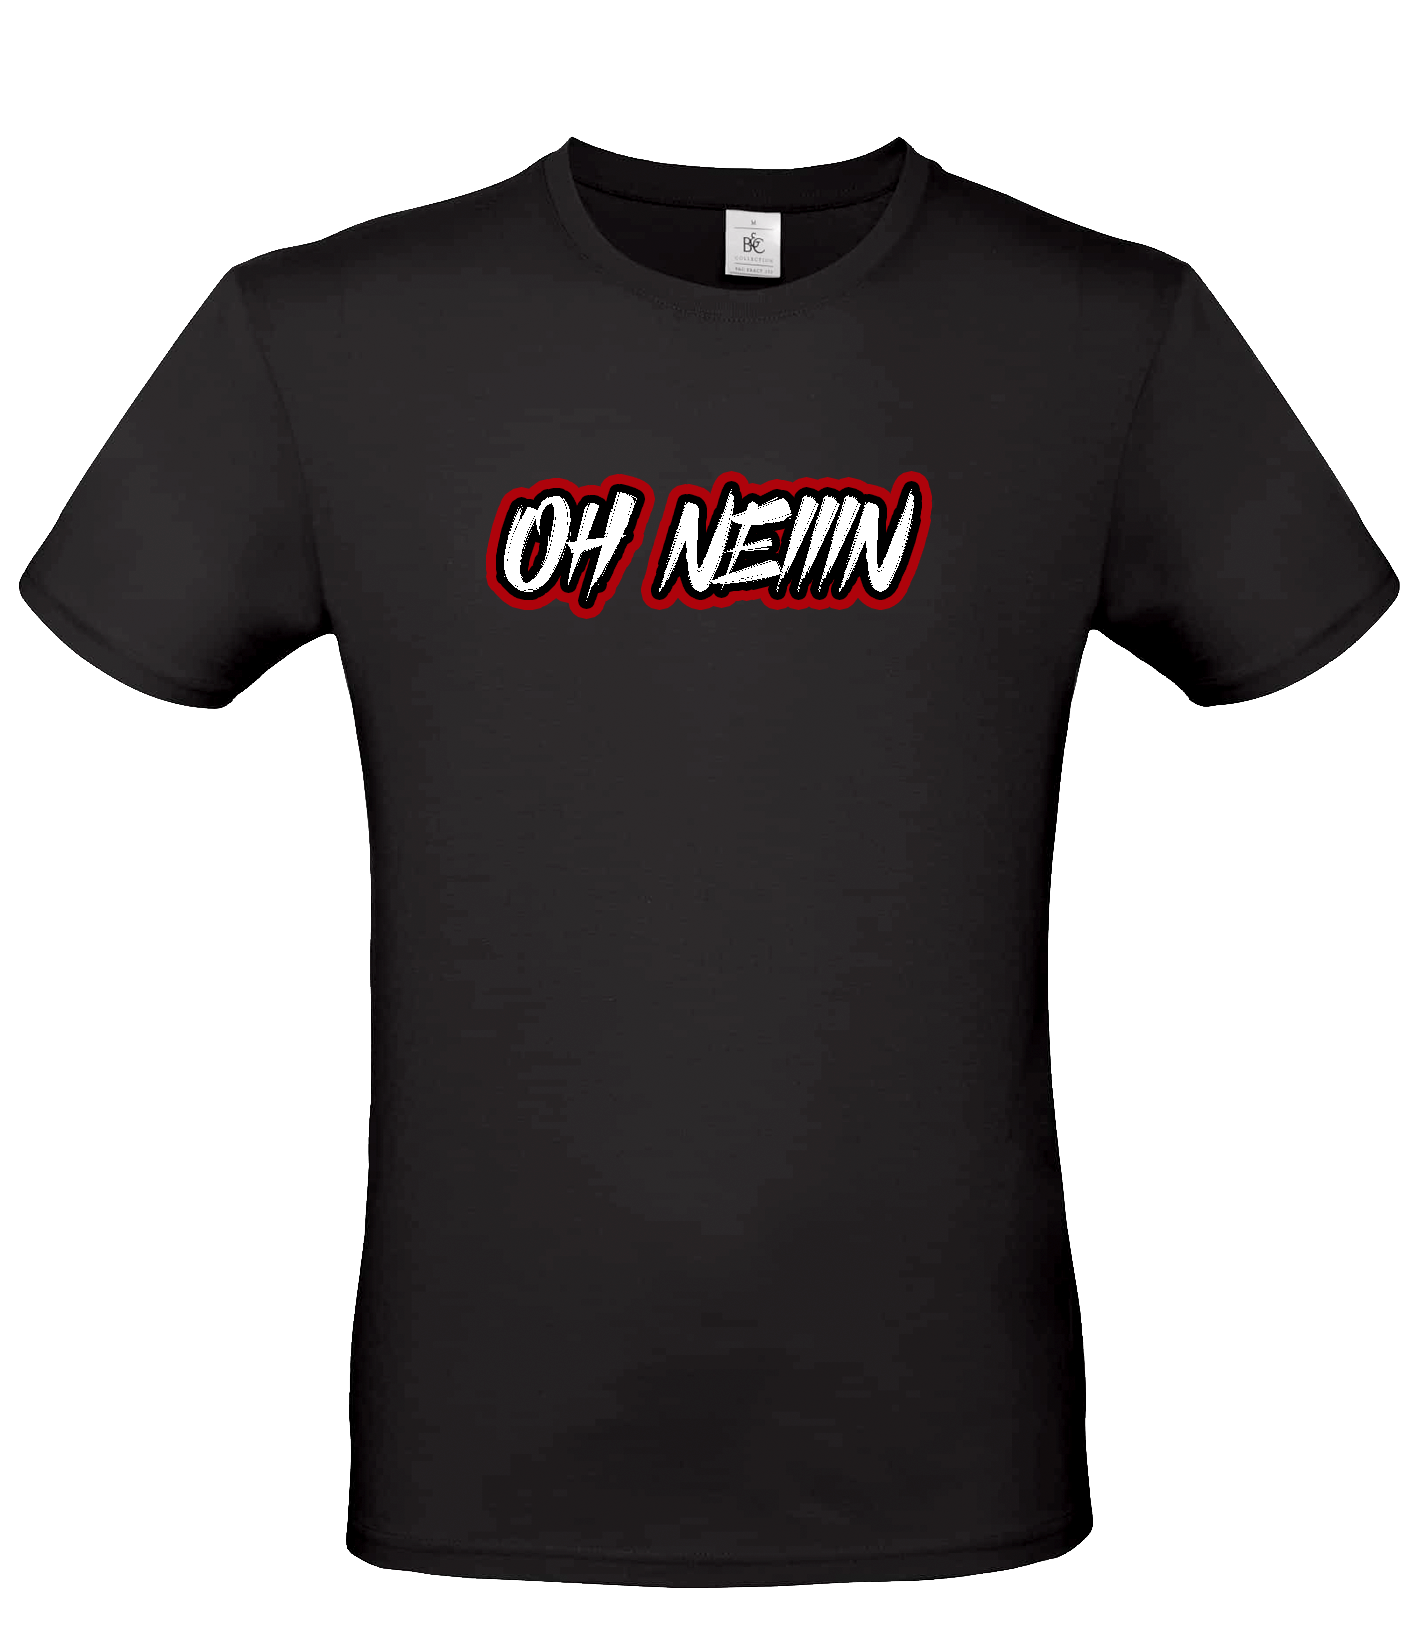 Scherfiii - Oh Neiiin T-Shirt